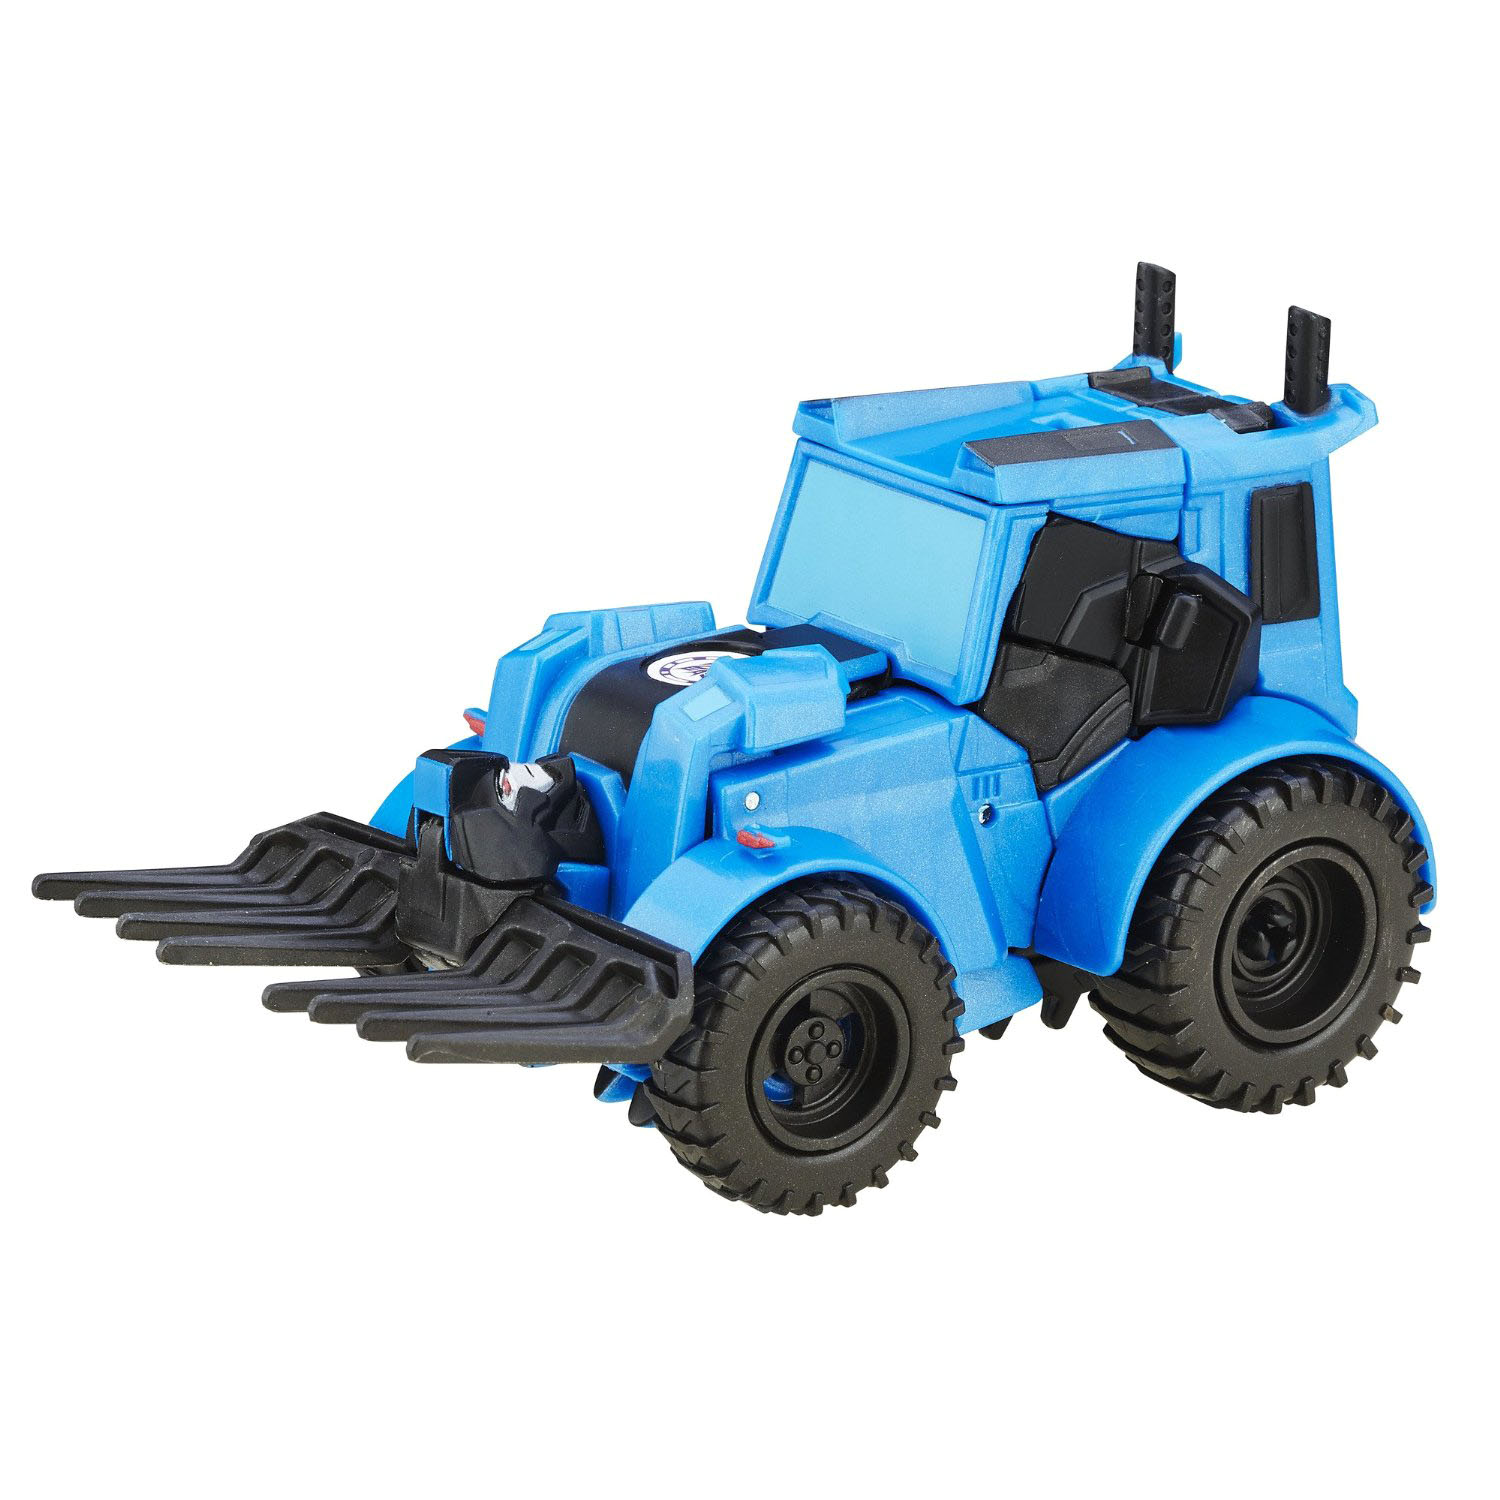 Трансформер-трактор из серии Роботы под прикрытием – Thunderhoof  